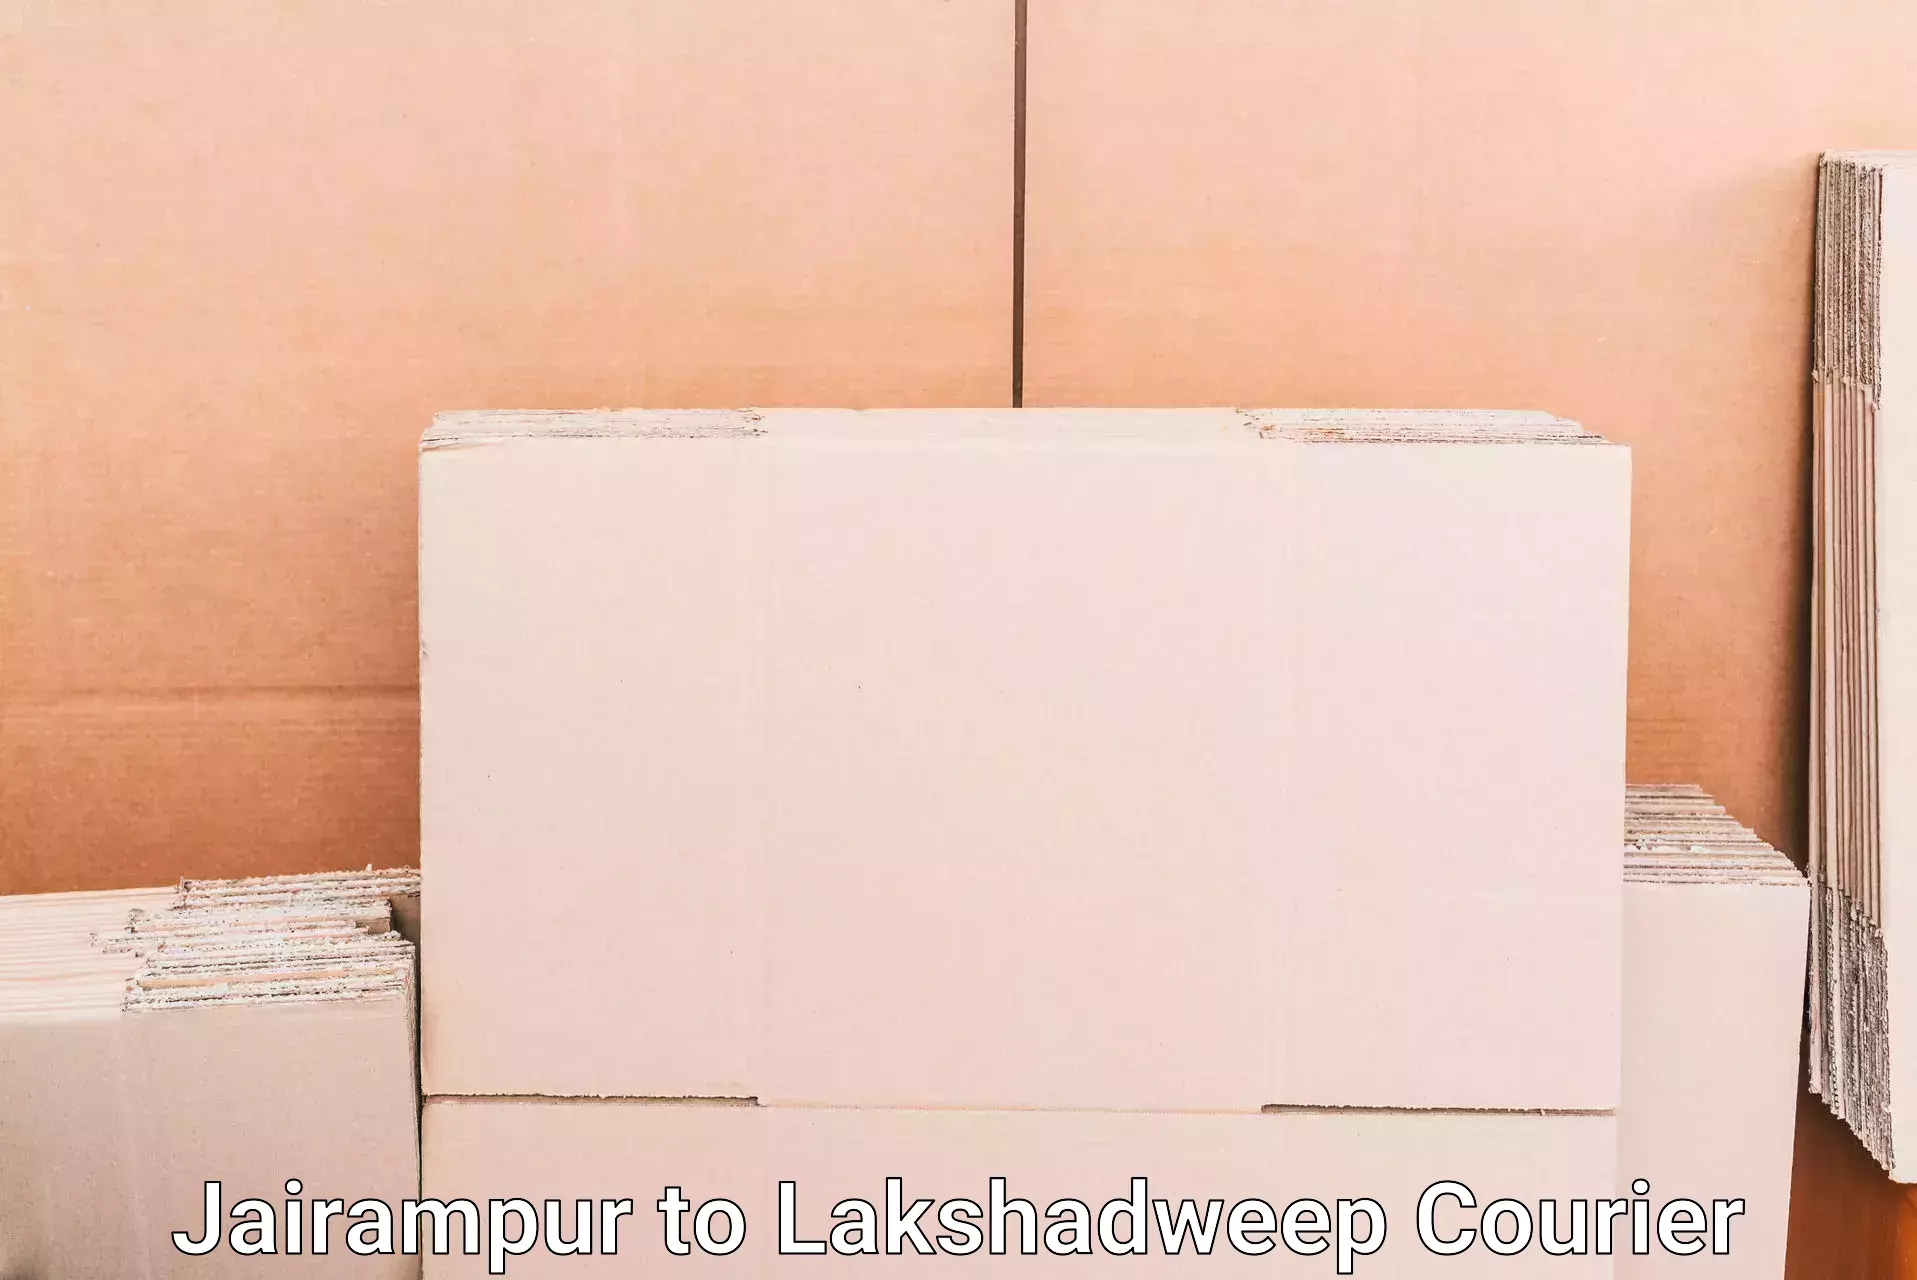 Luggage forwarding service Jairampur to Lakshadweep